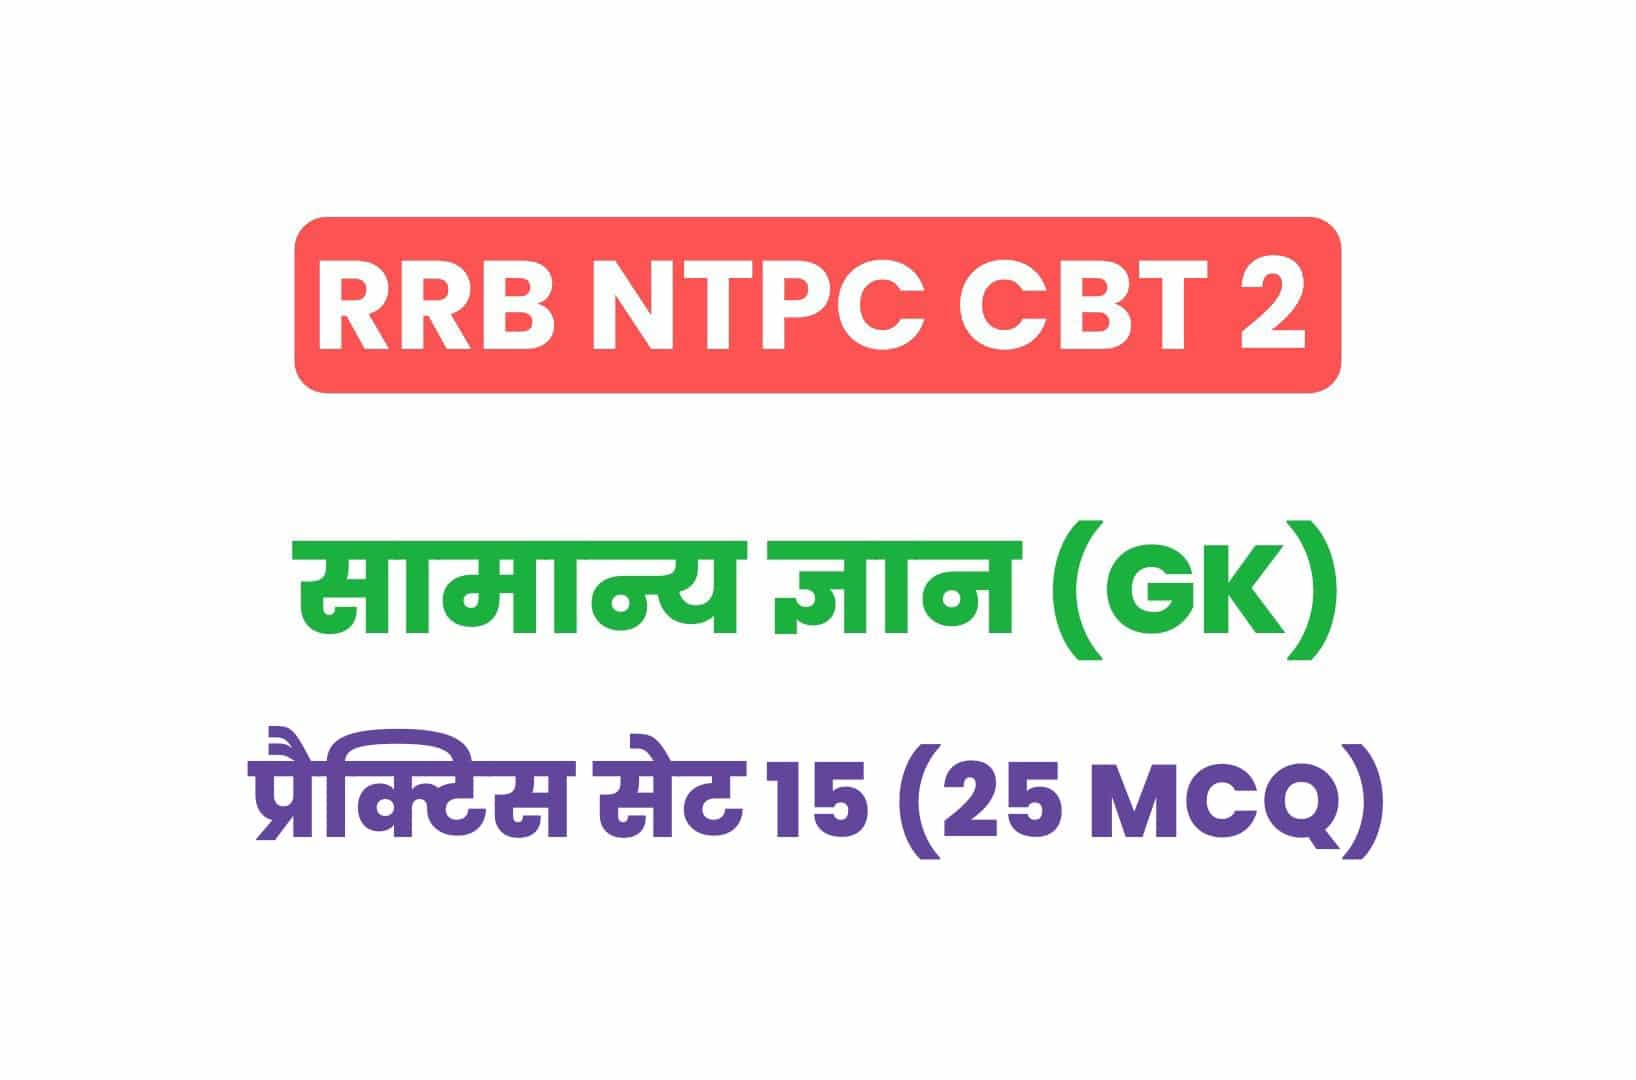 RRB NTPC CBT 2 GK प्रैक्टिस सेट 15: परीक्षा में पूछे गये सामान्य ज्ञान के 25 महत्वपूर्ण MCQ देखें